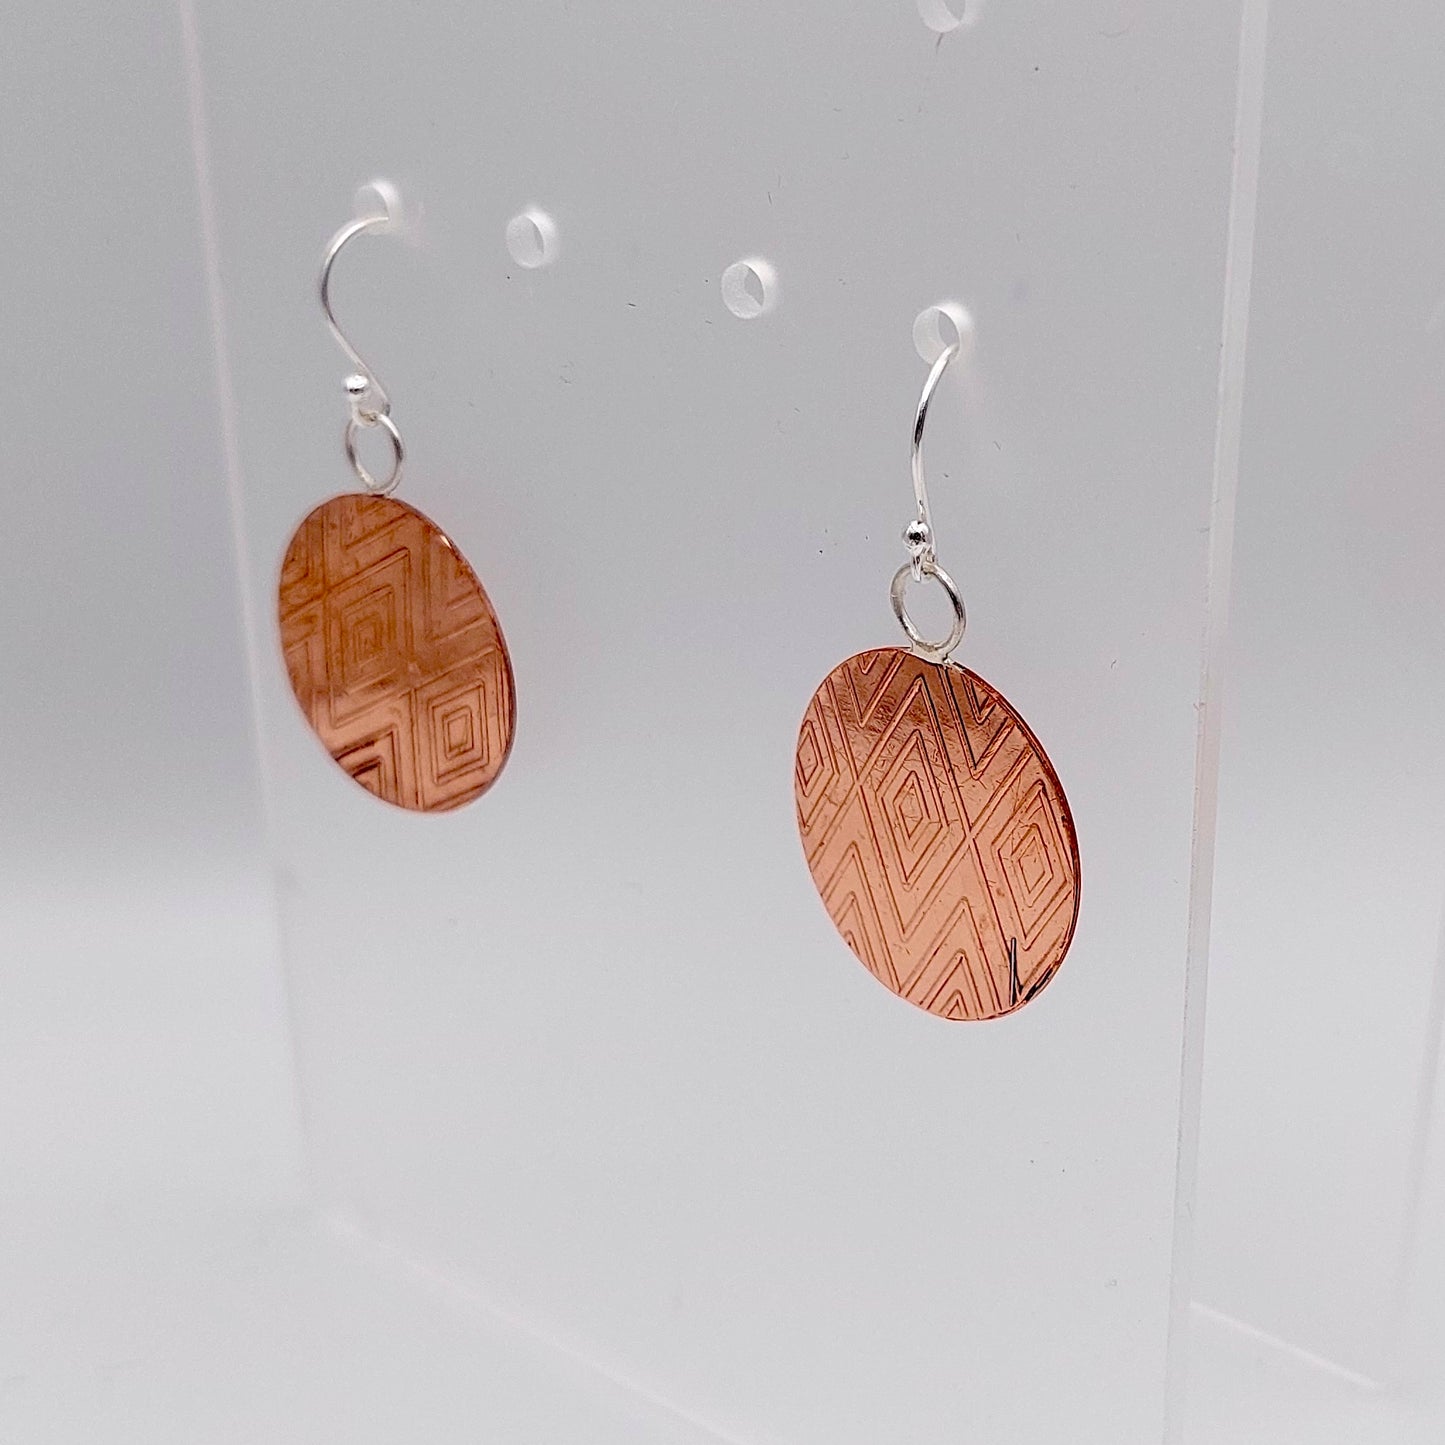 Asymmetric Chevron Copper Earrings